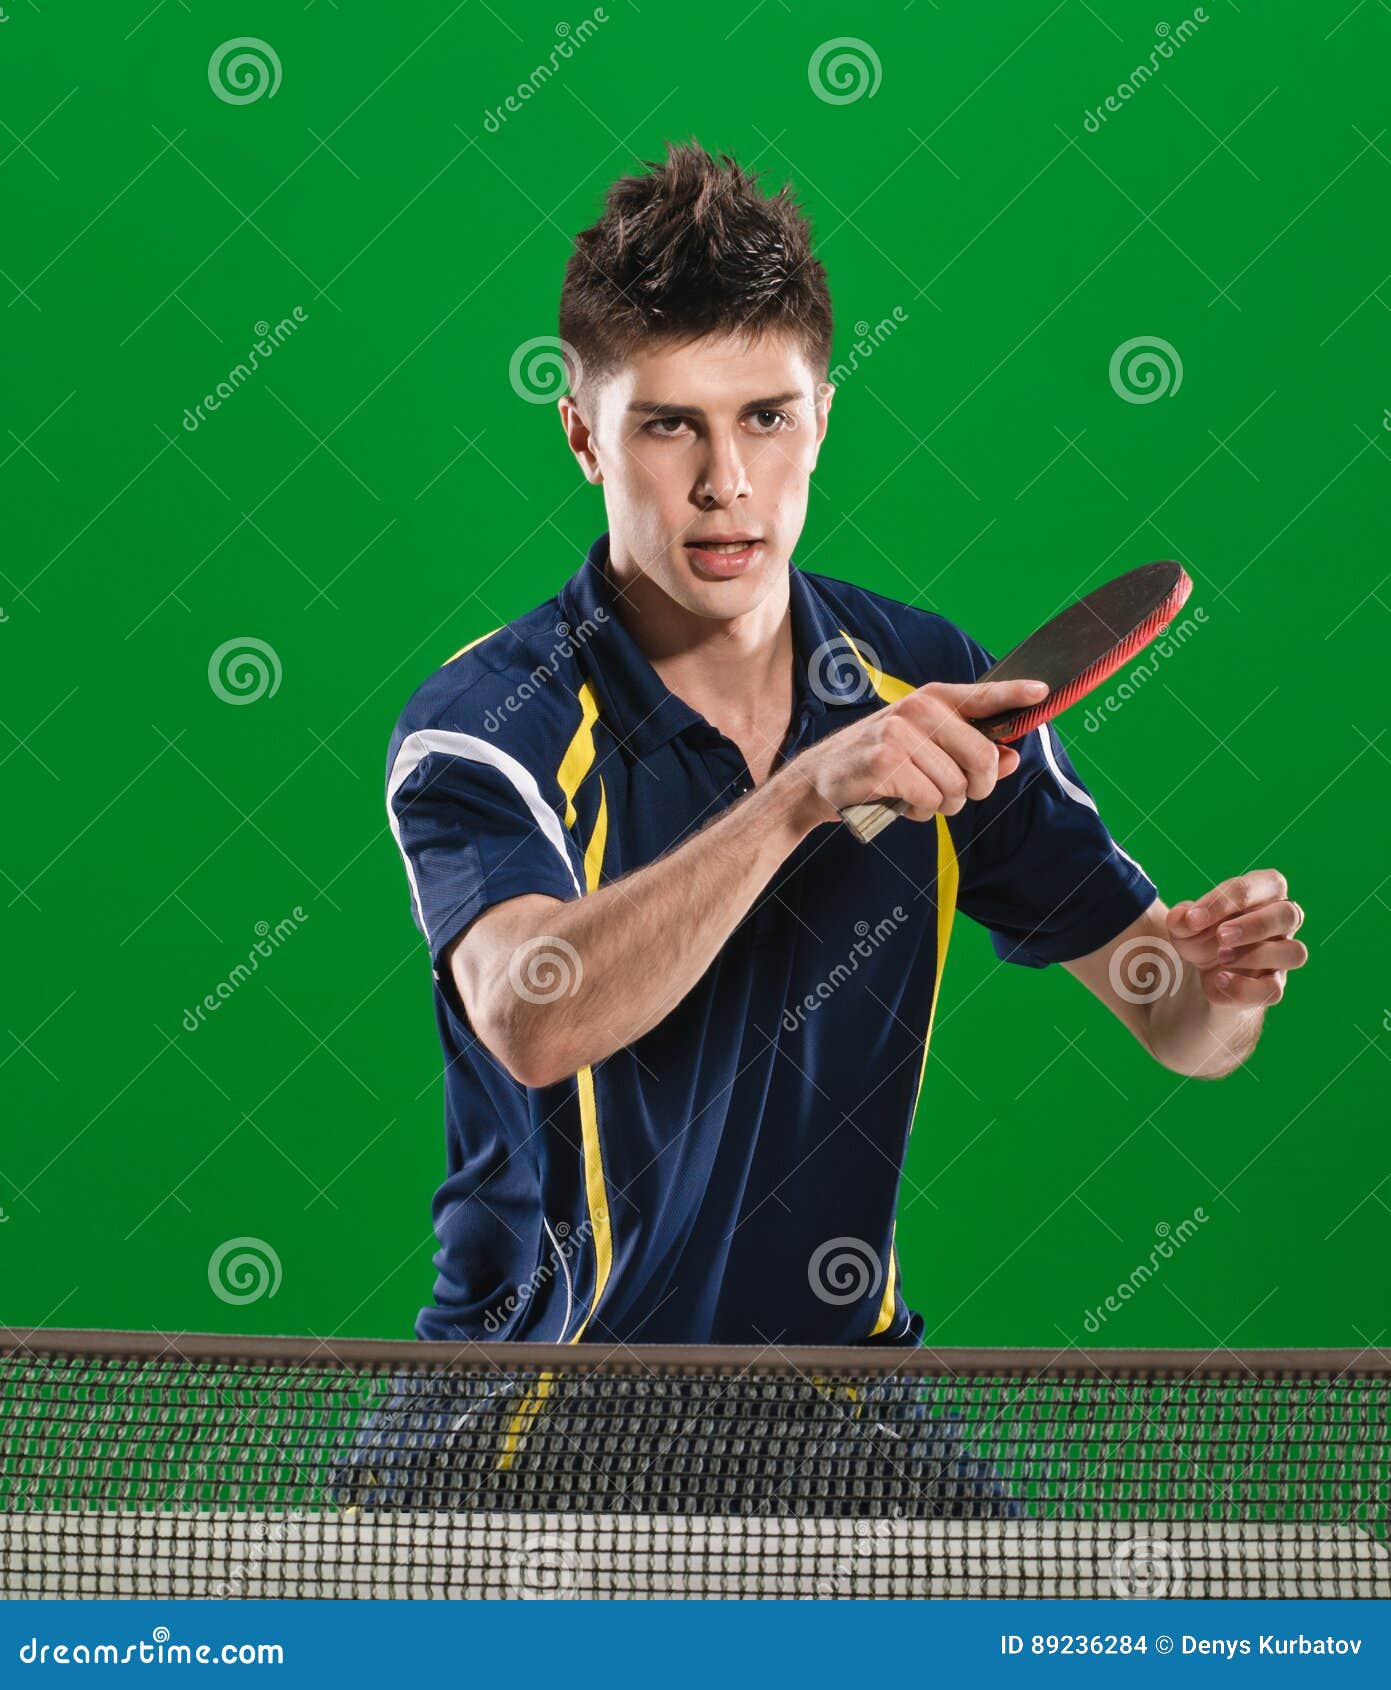  Joueur  beau de ping  pong  photo stock Image du concurrence 